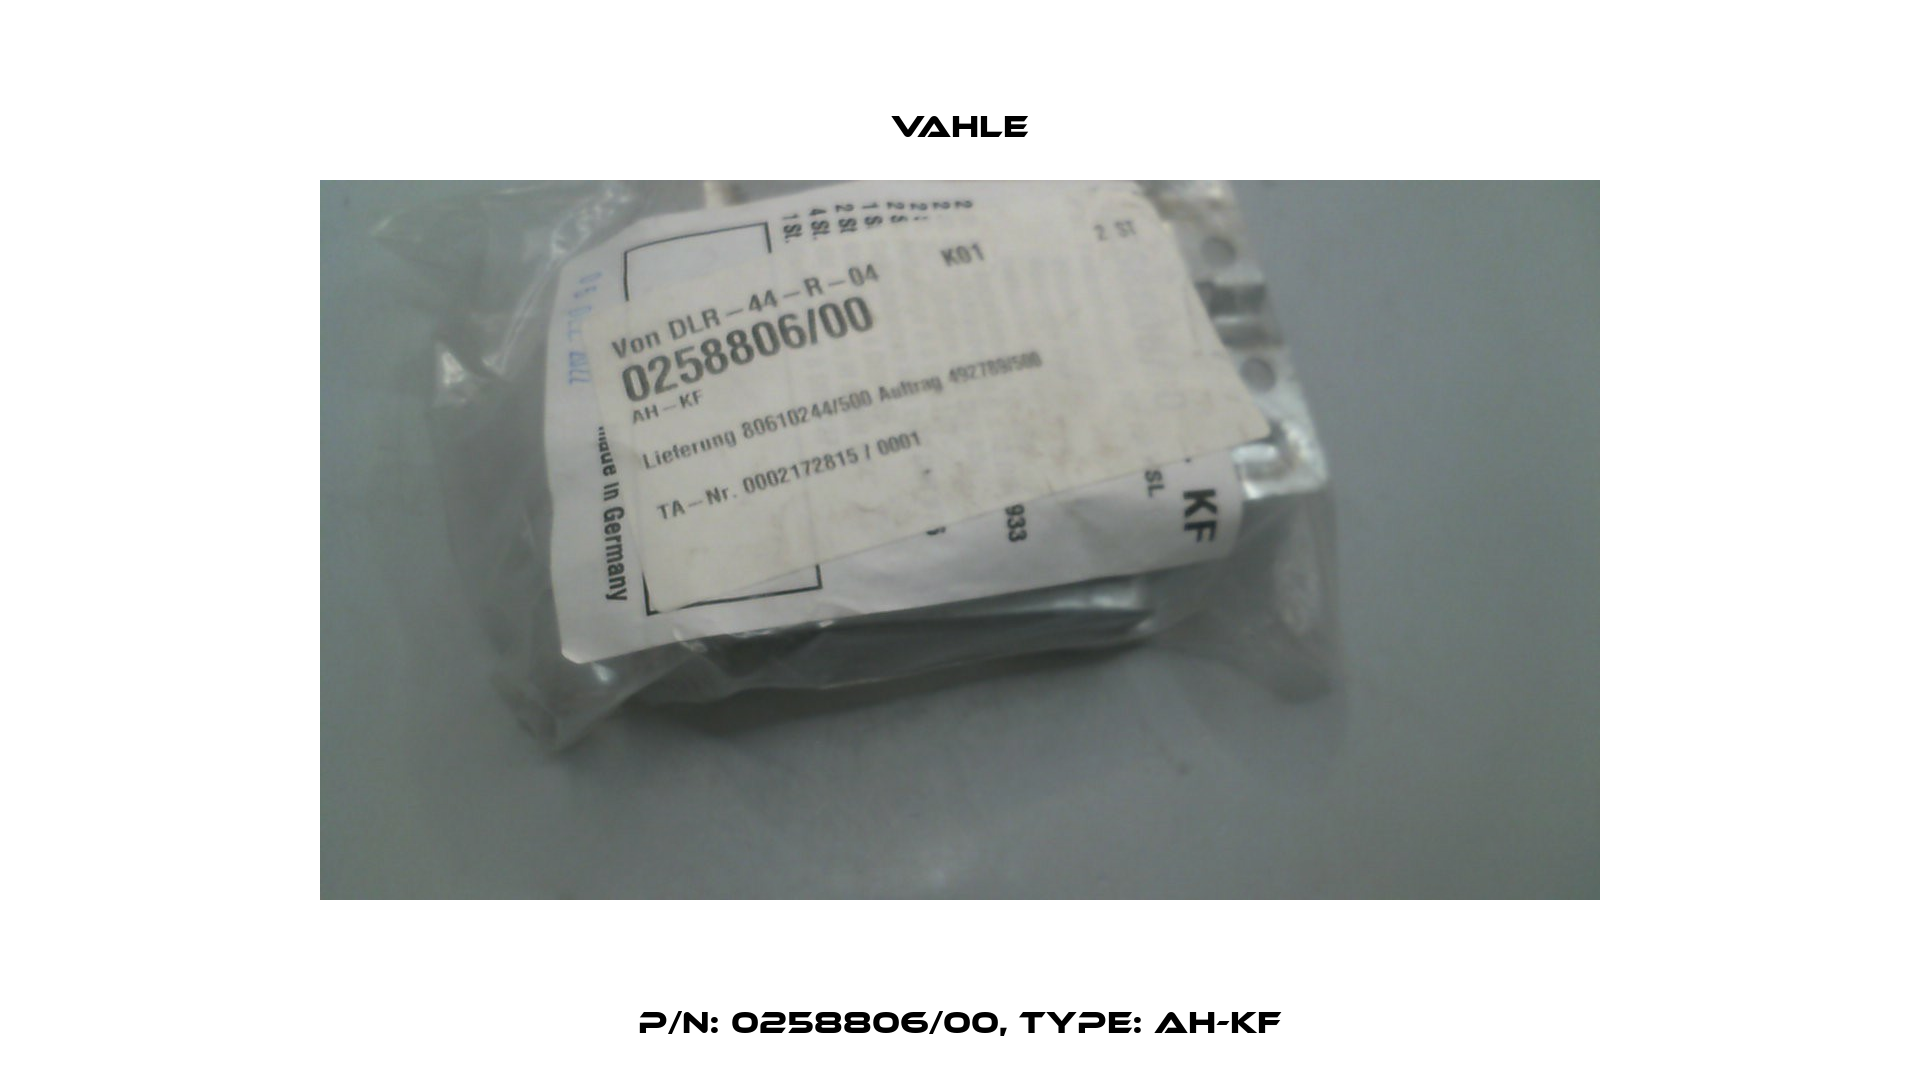 P/n: 0258806/00, Type: AH-KF Vahle